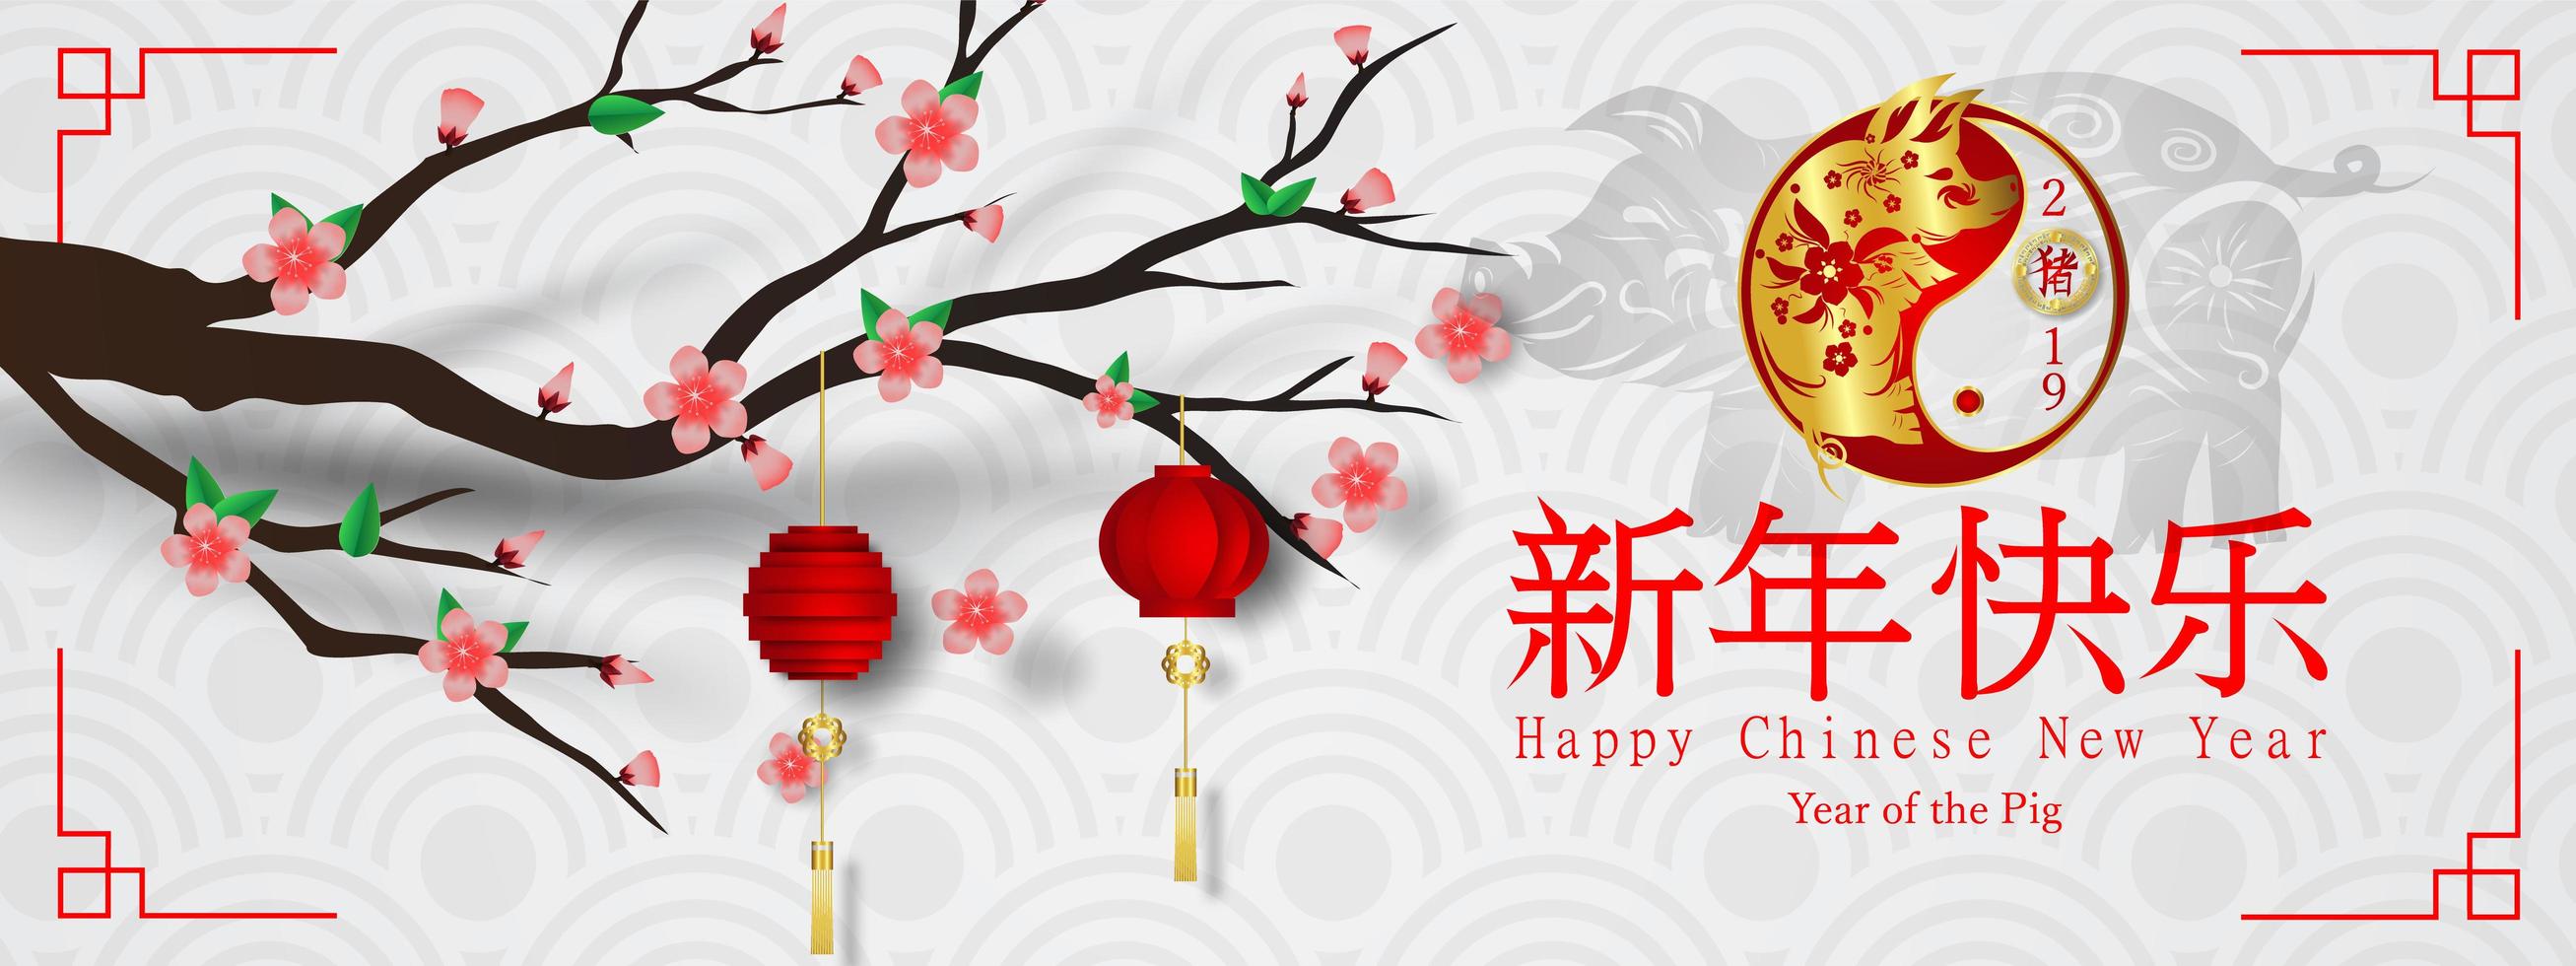 joyeux nouvel an chinois du cochon bannière asiatique vecteur